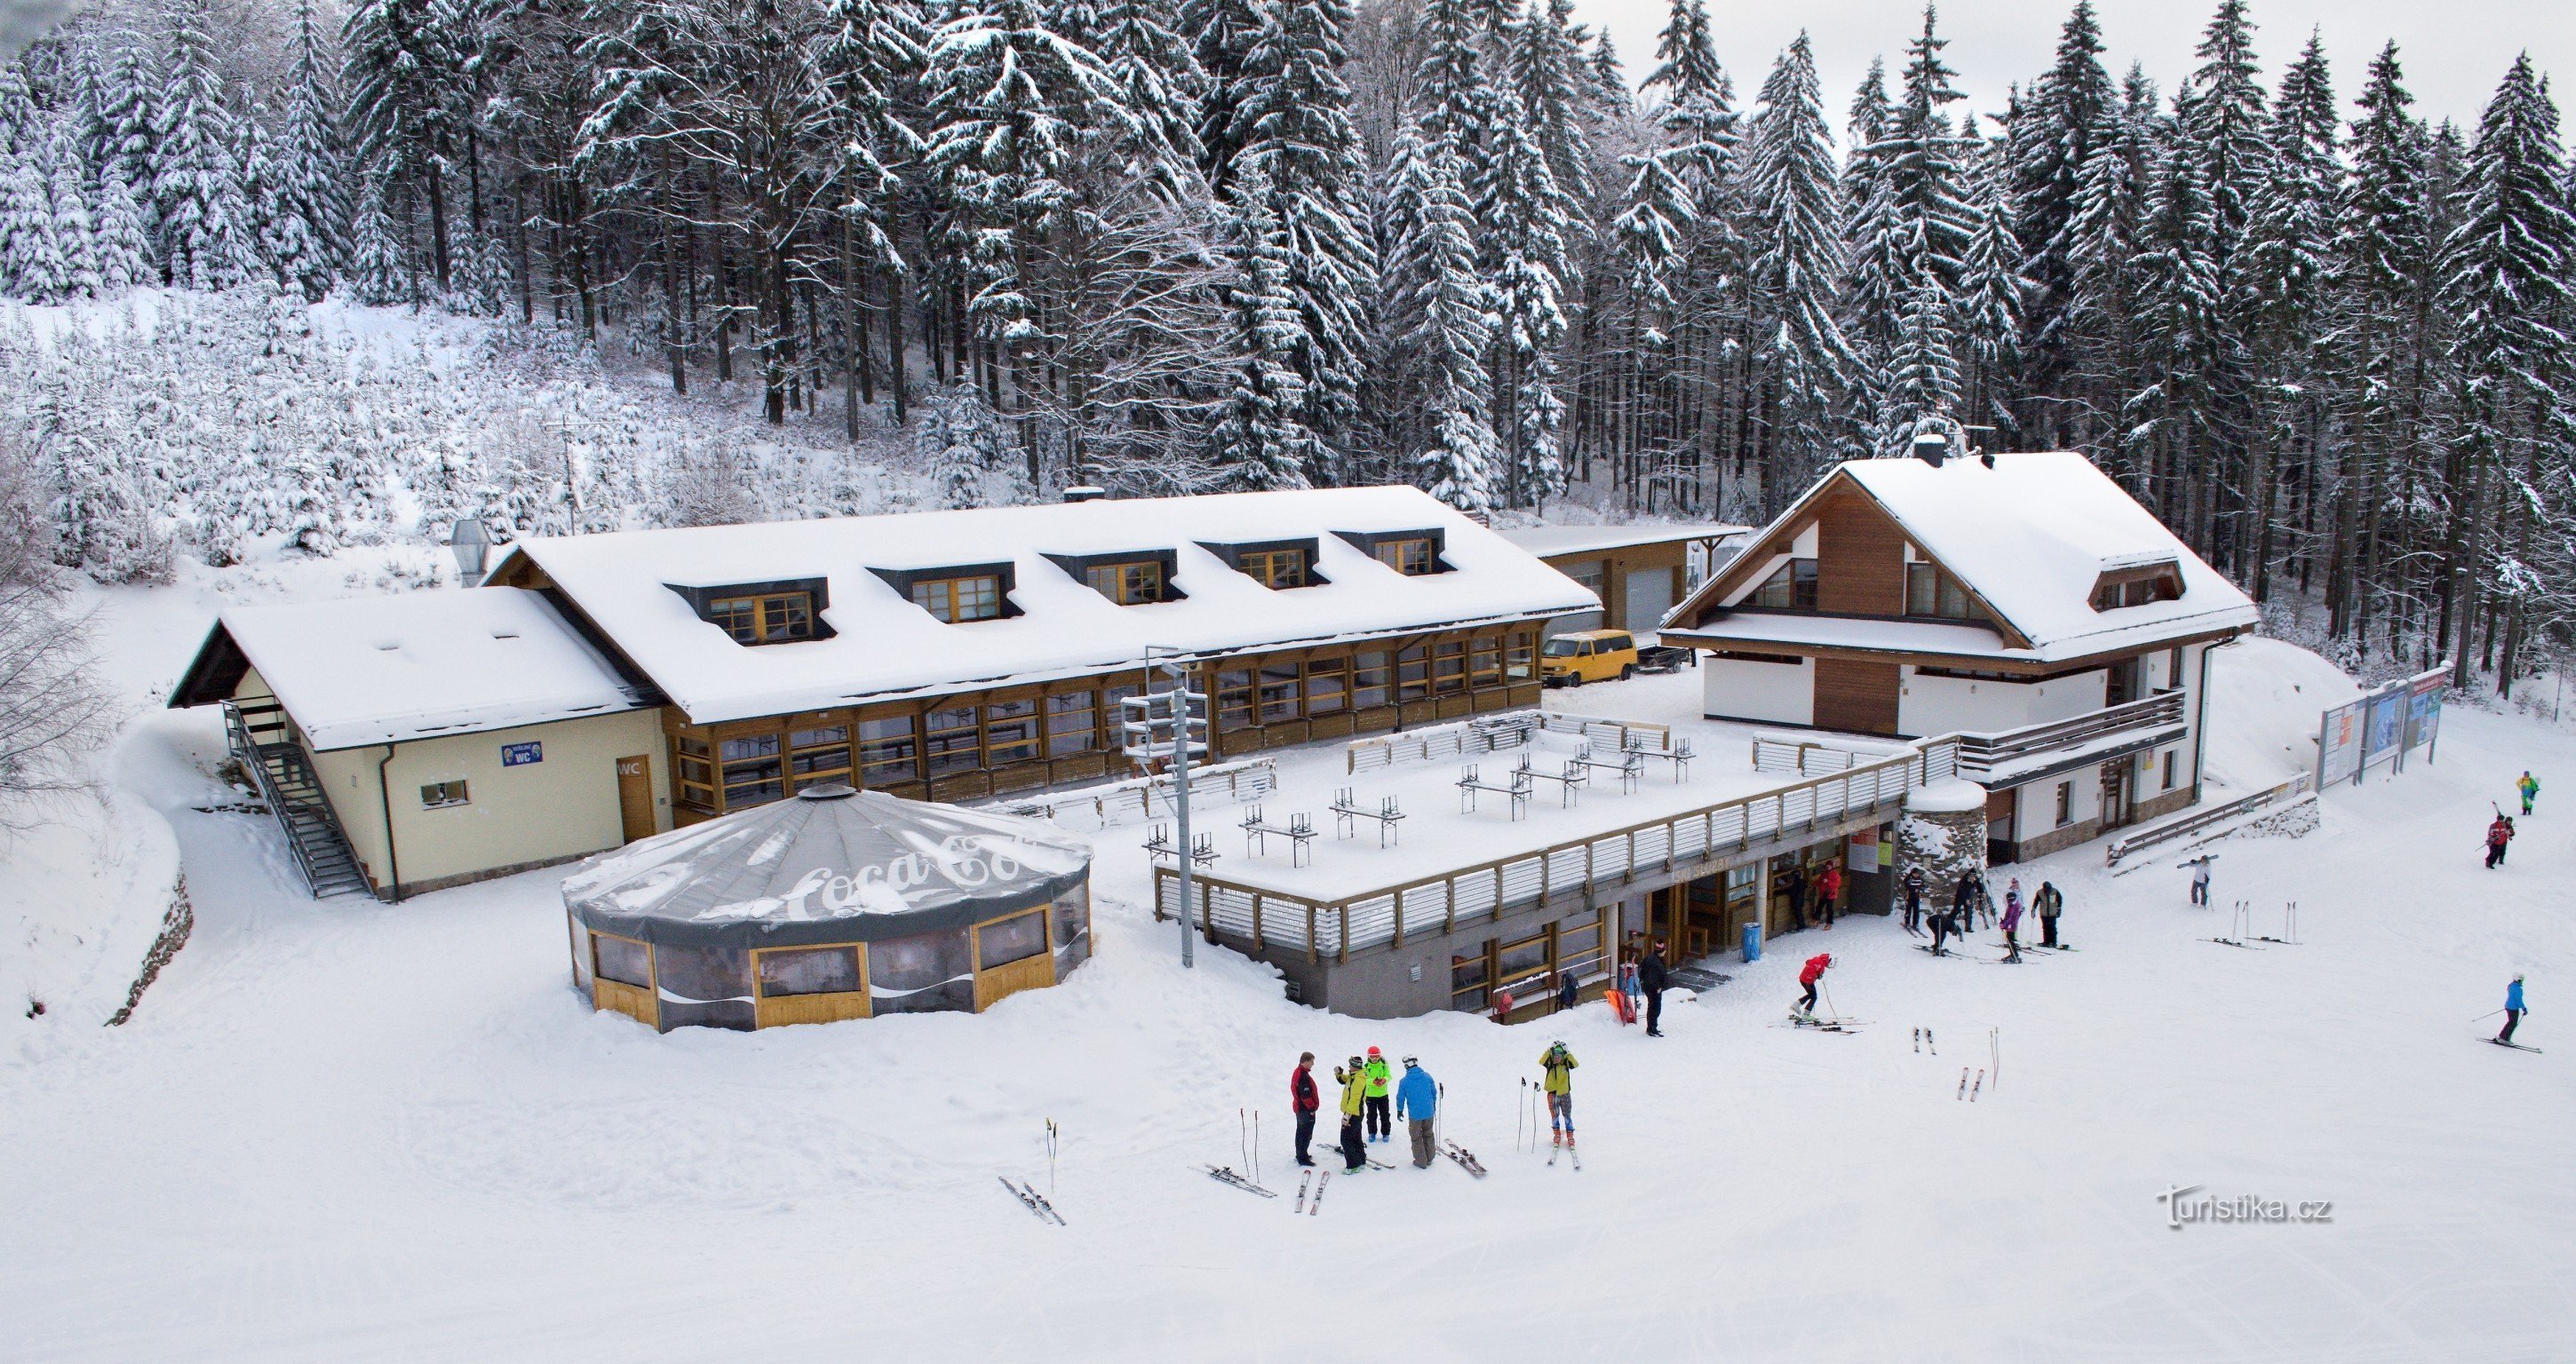 Skizentrum Říčky im Adlergebirge